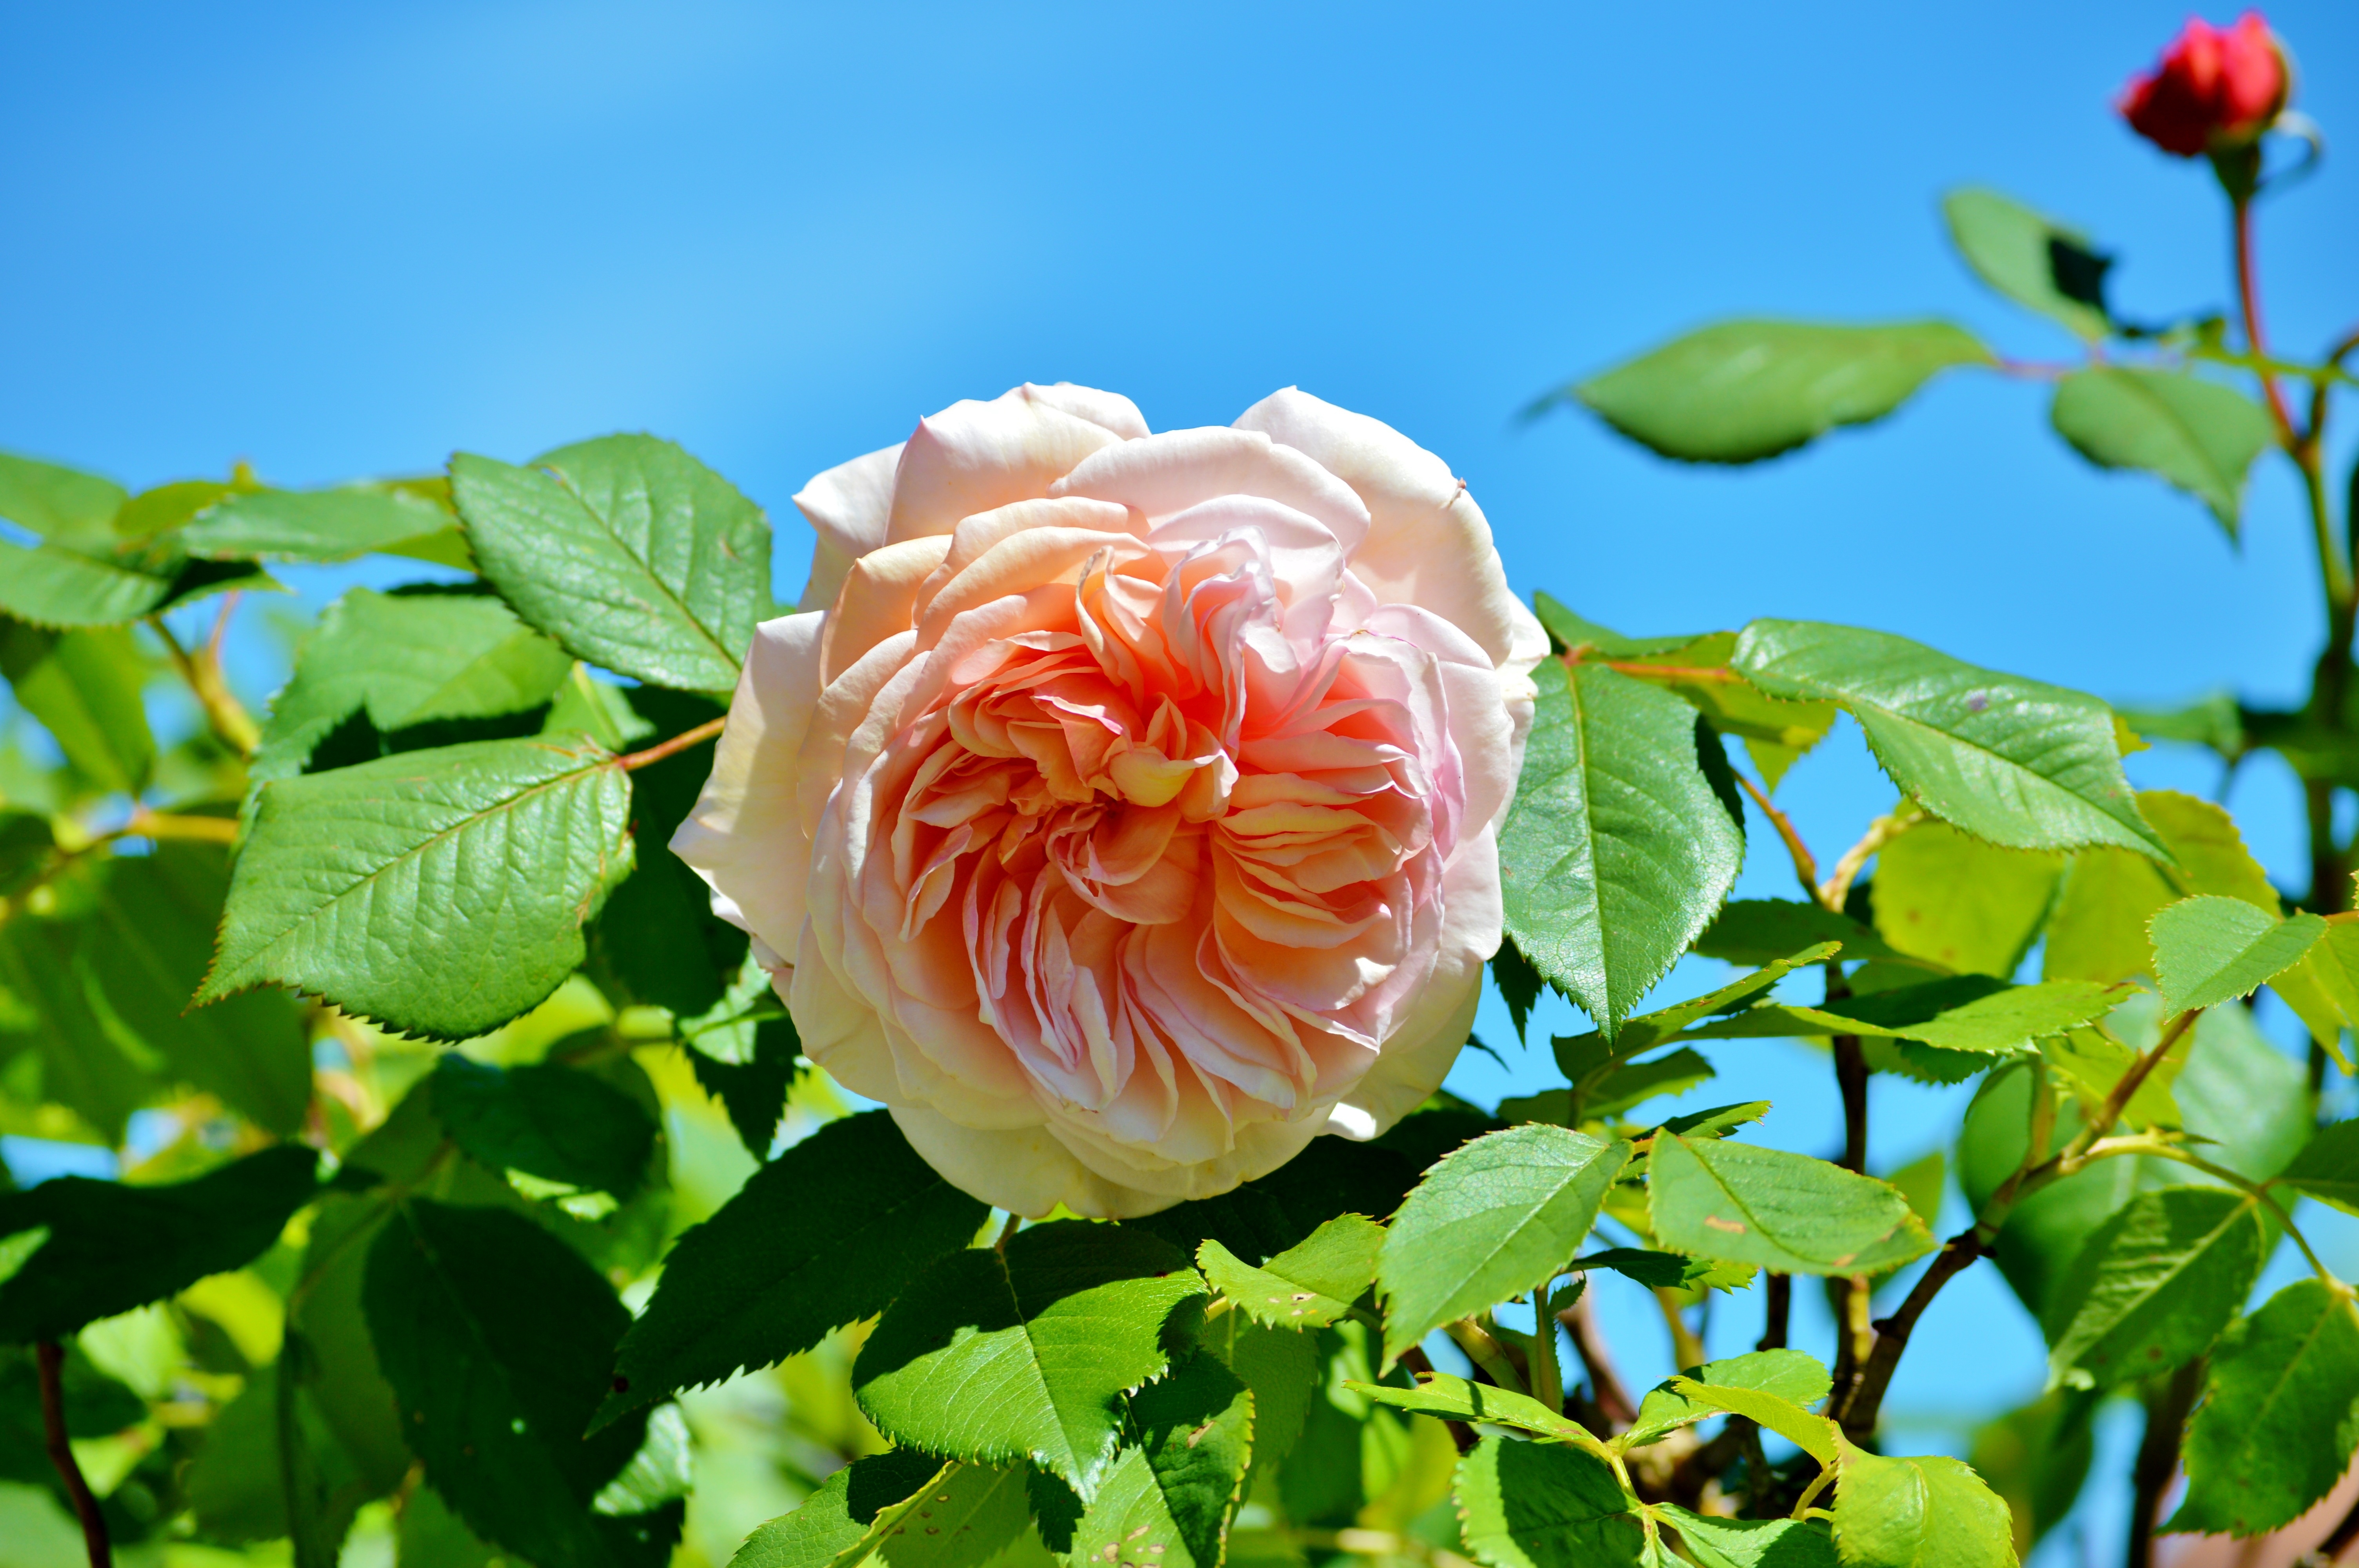 Фото обои розовая роза листья небо - бесплатные картинки на Fonwall